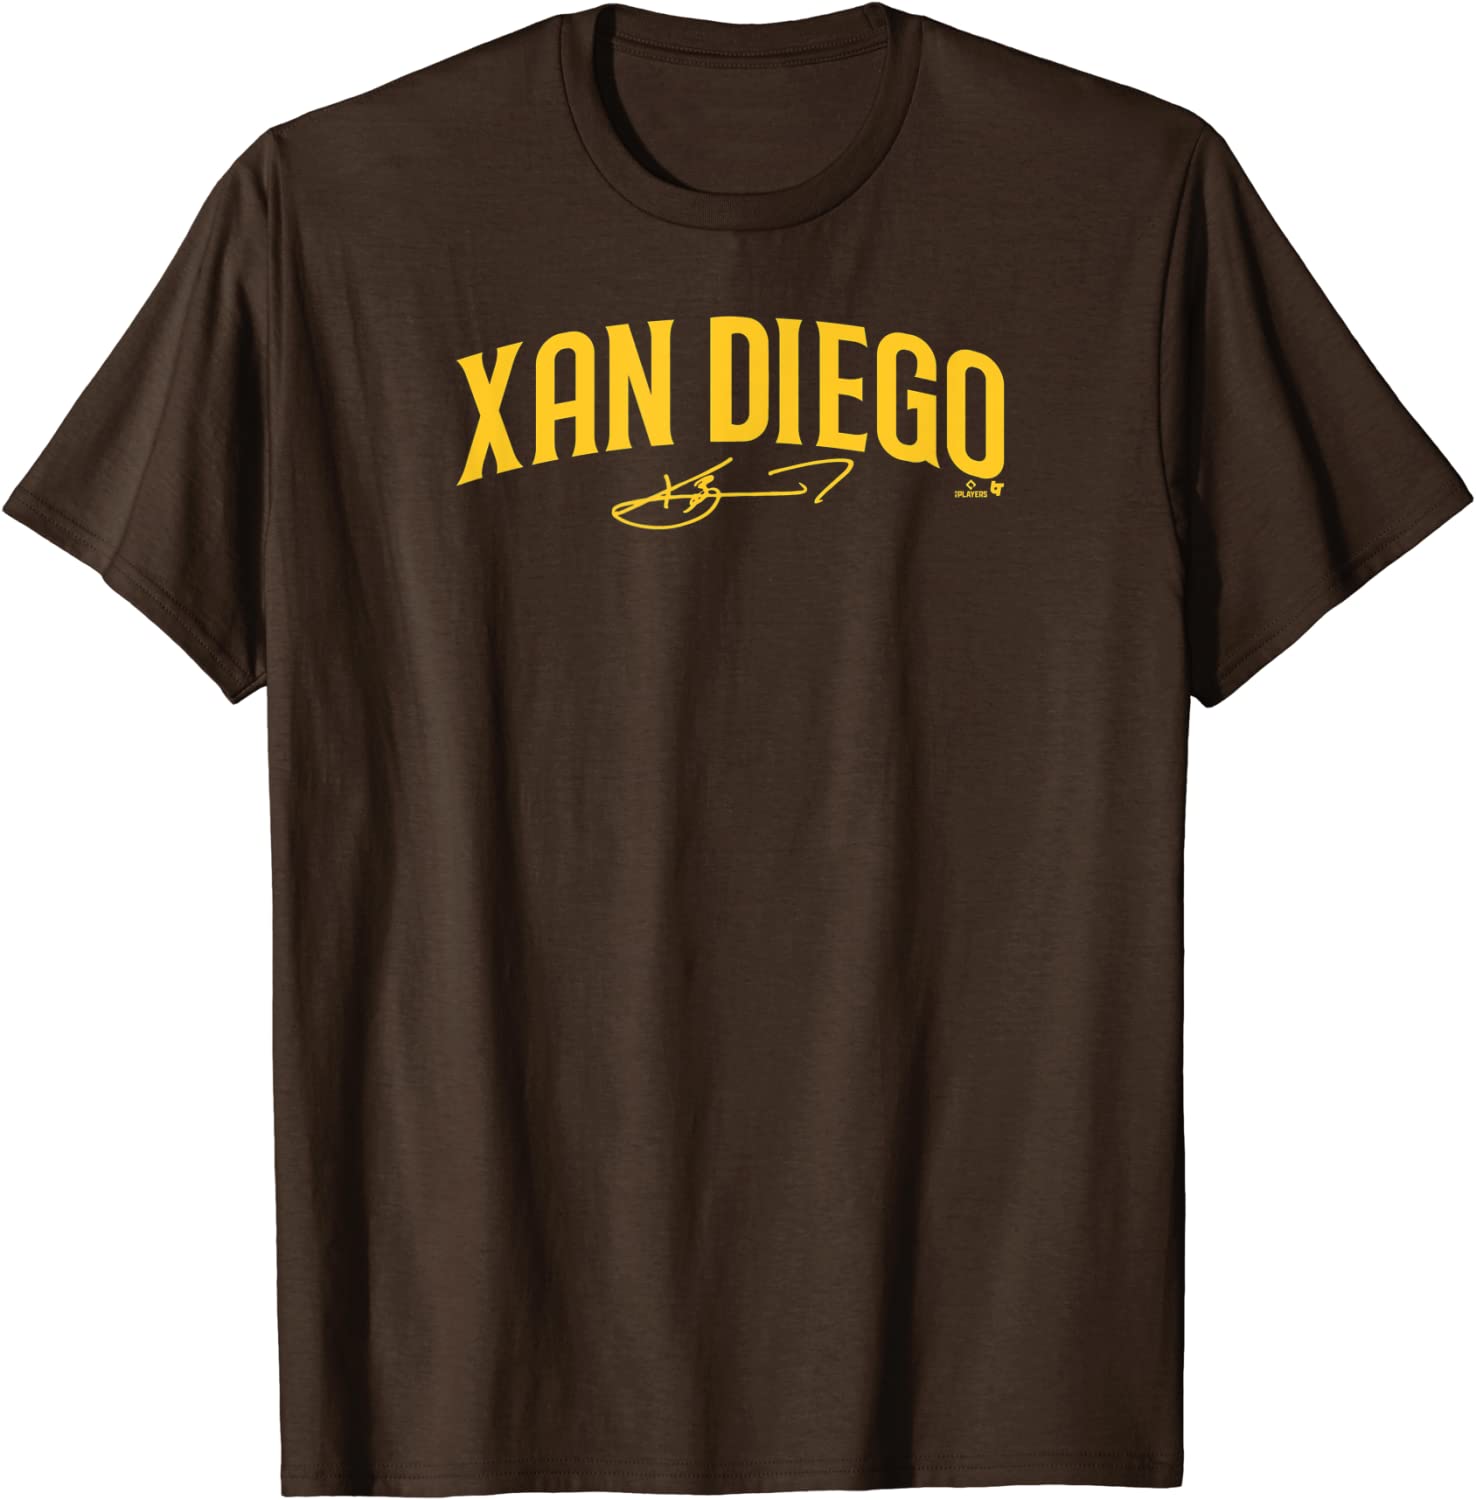 Xander Bogaerts - Xan Diego Modern - San Diego Baseball Tee Shirt